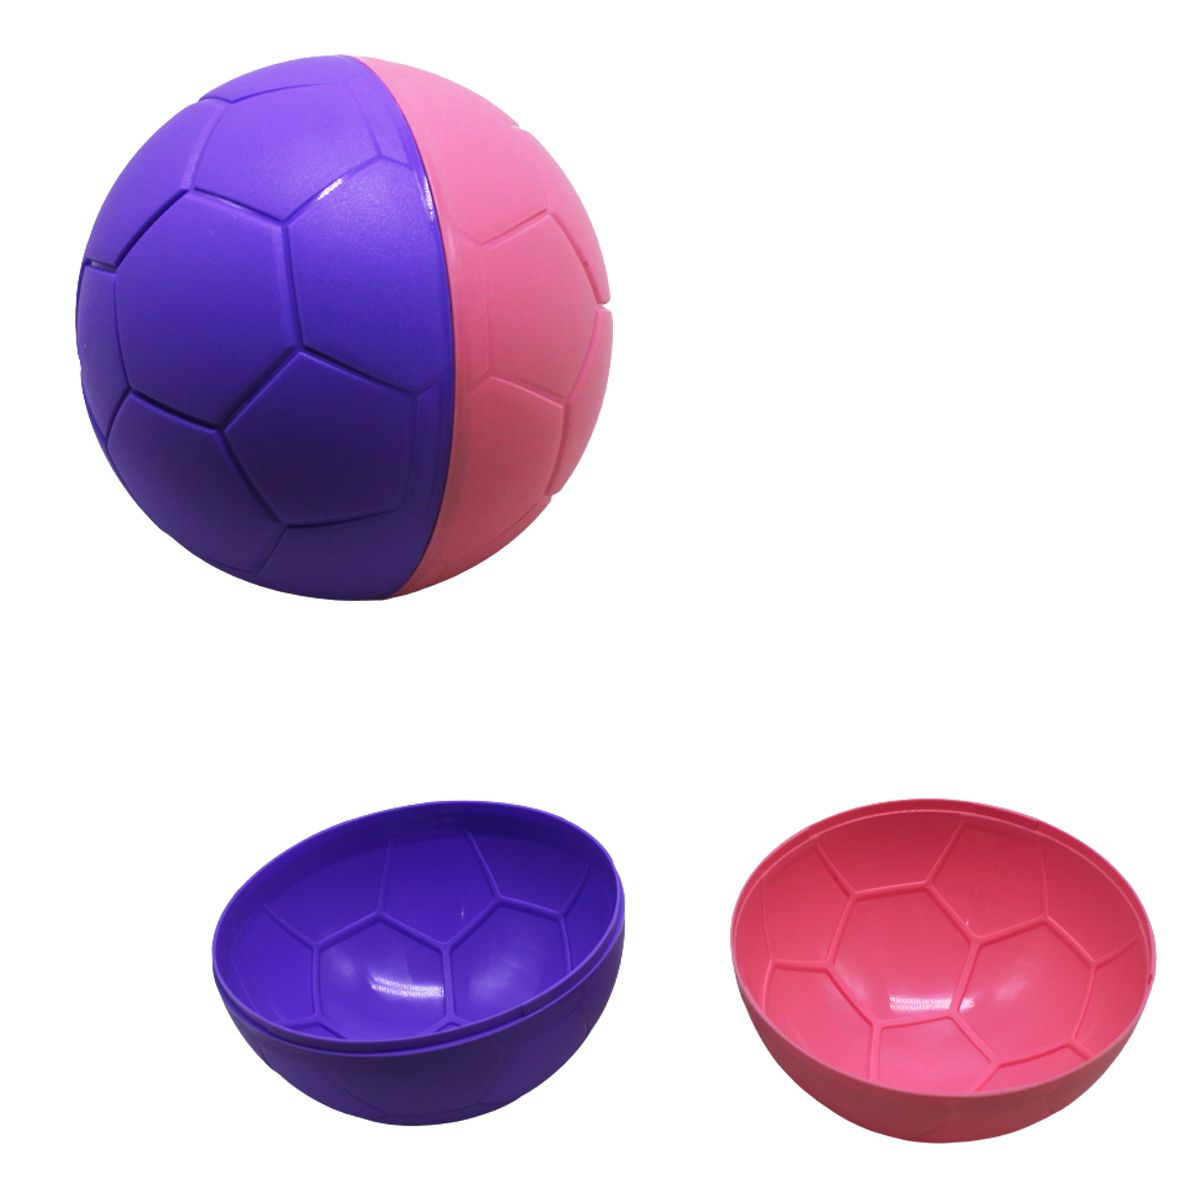 Формочка для песка "Мячик", фиолетово-розовый